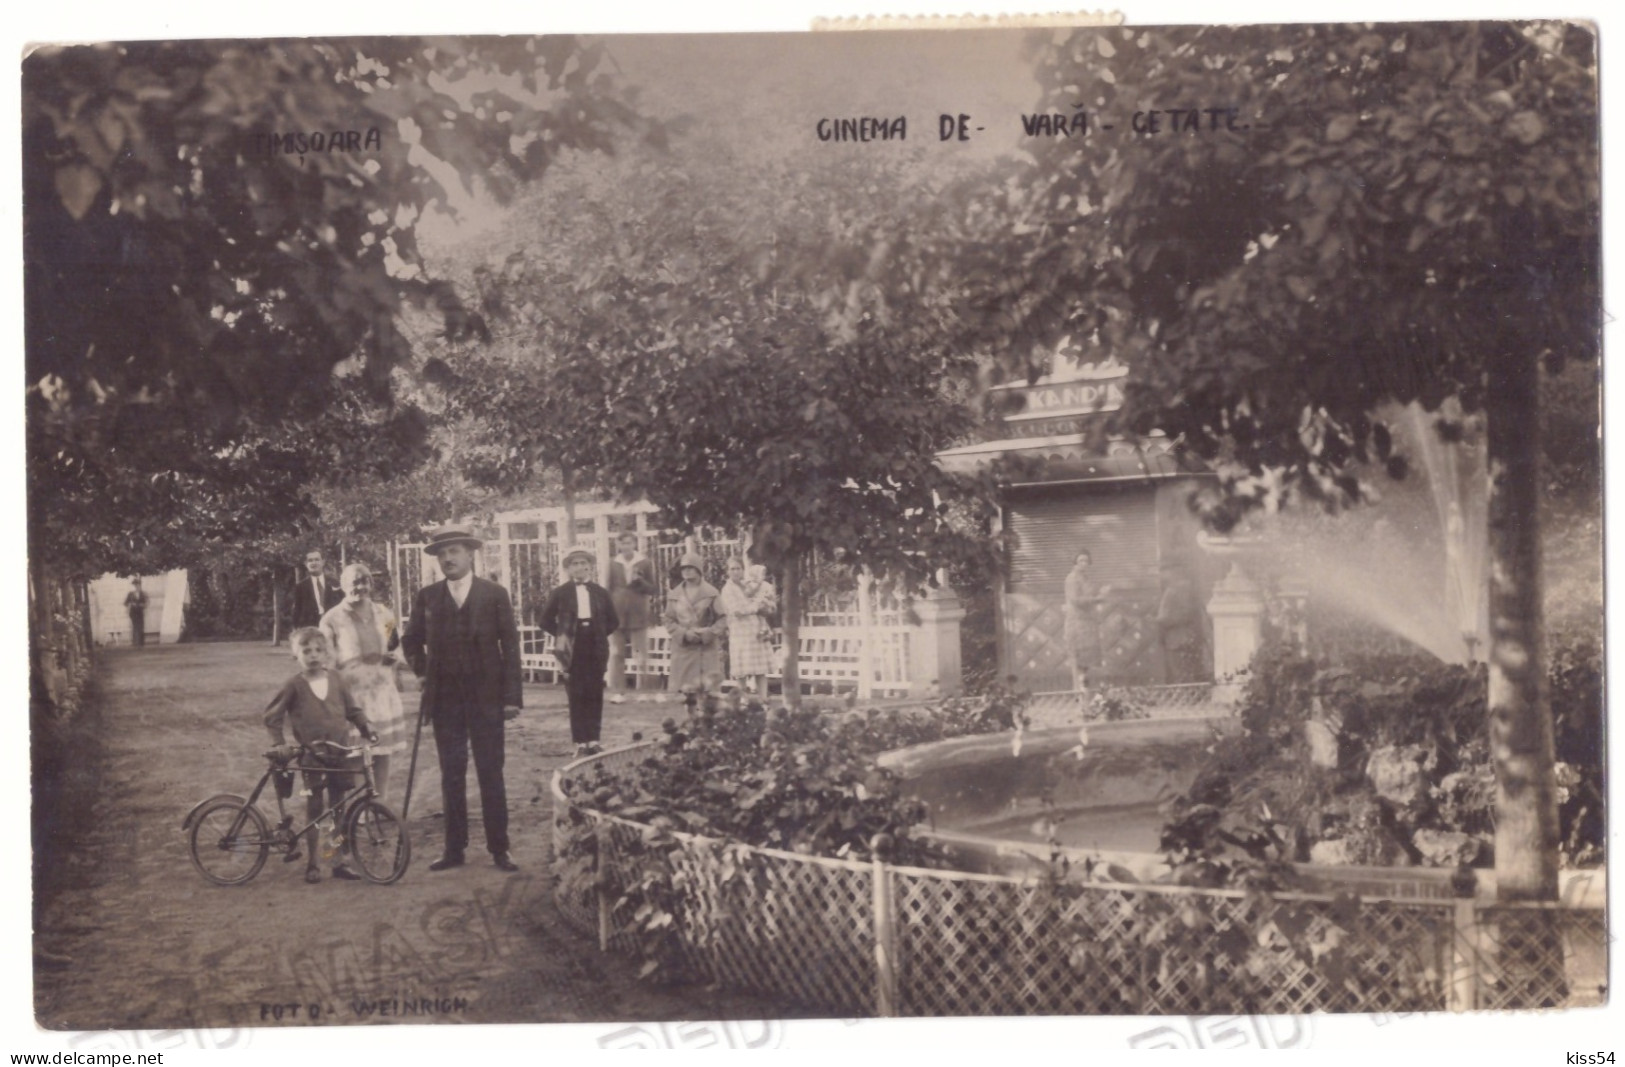 RO 63 - 22432 TIMISOARA, Summer Garden, Bike, Romania - Old Postcard, Real Photo - Used - 1928 - Rumänien